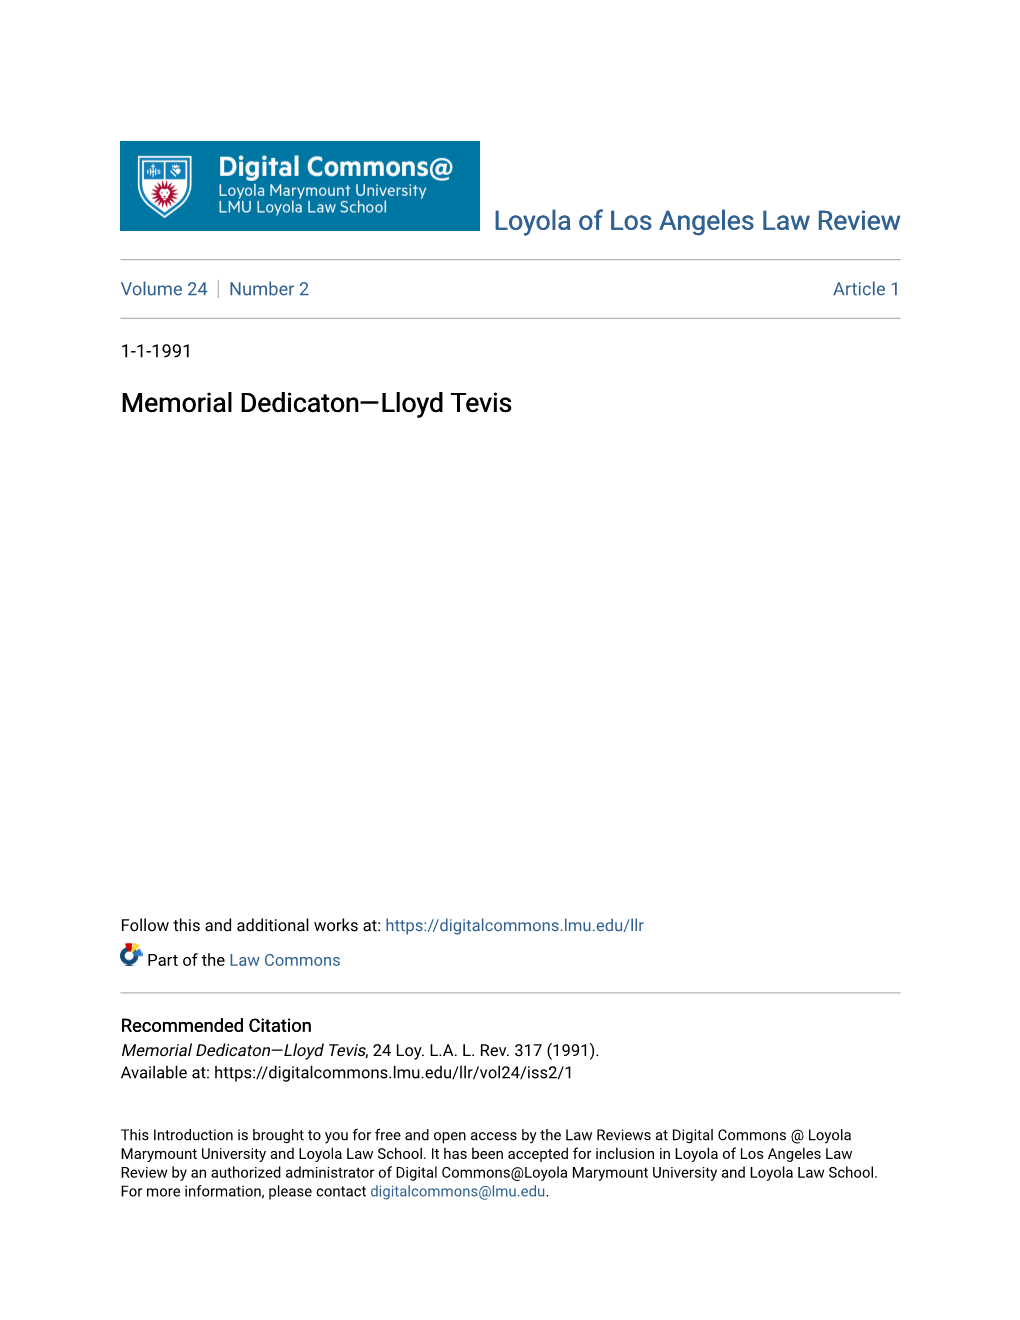 Memorial Dedicaton—Lloyd Tevis